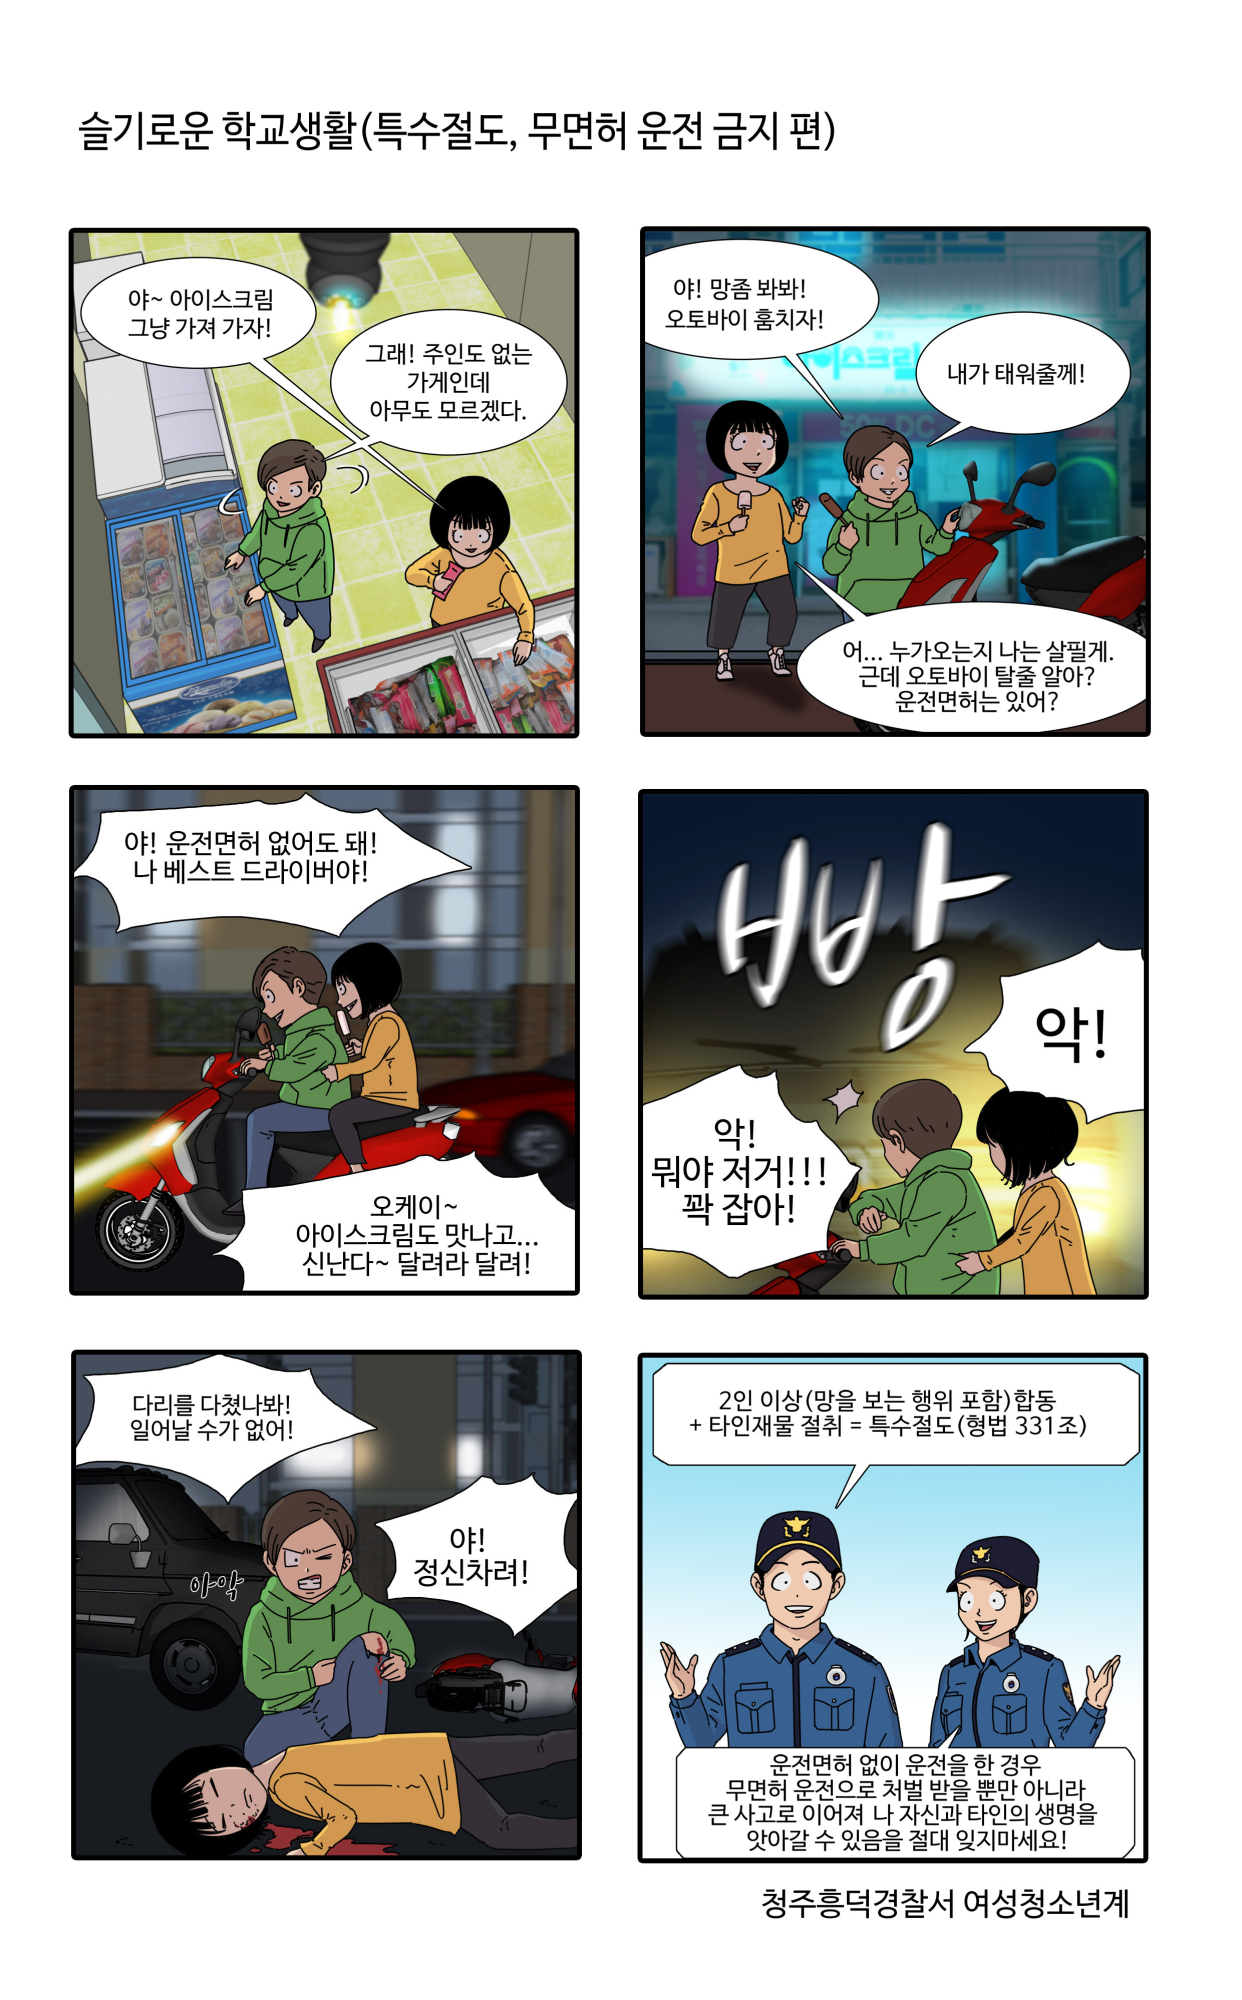 [오송초등학교-8938 (첨부) 청주흥덕경찰서 여성청소년과] 슬기로운 학교생활 2편